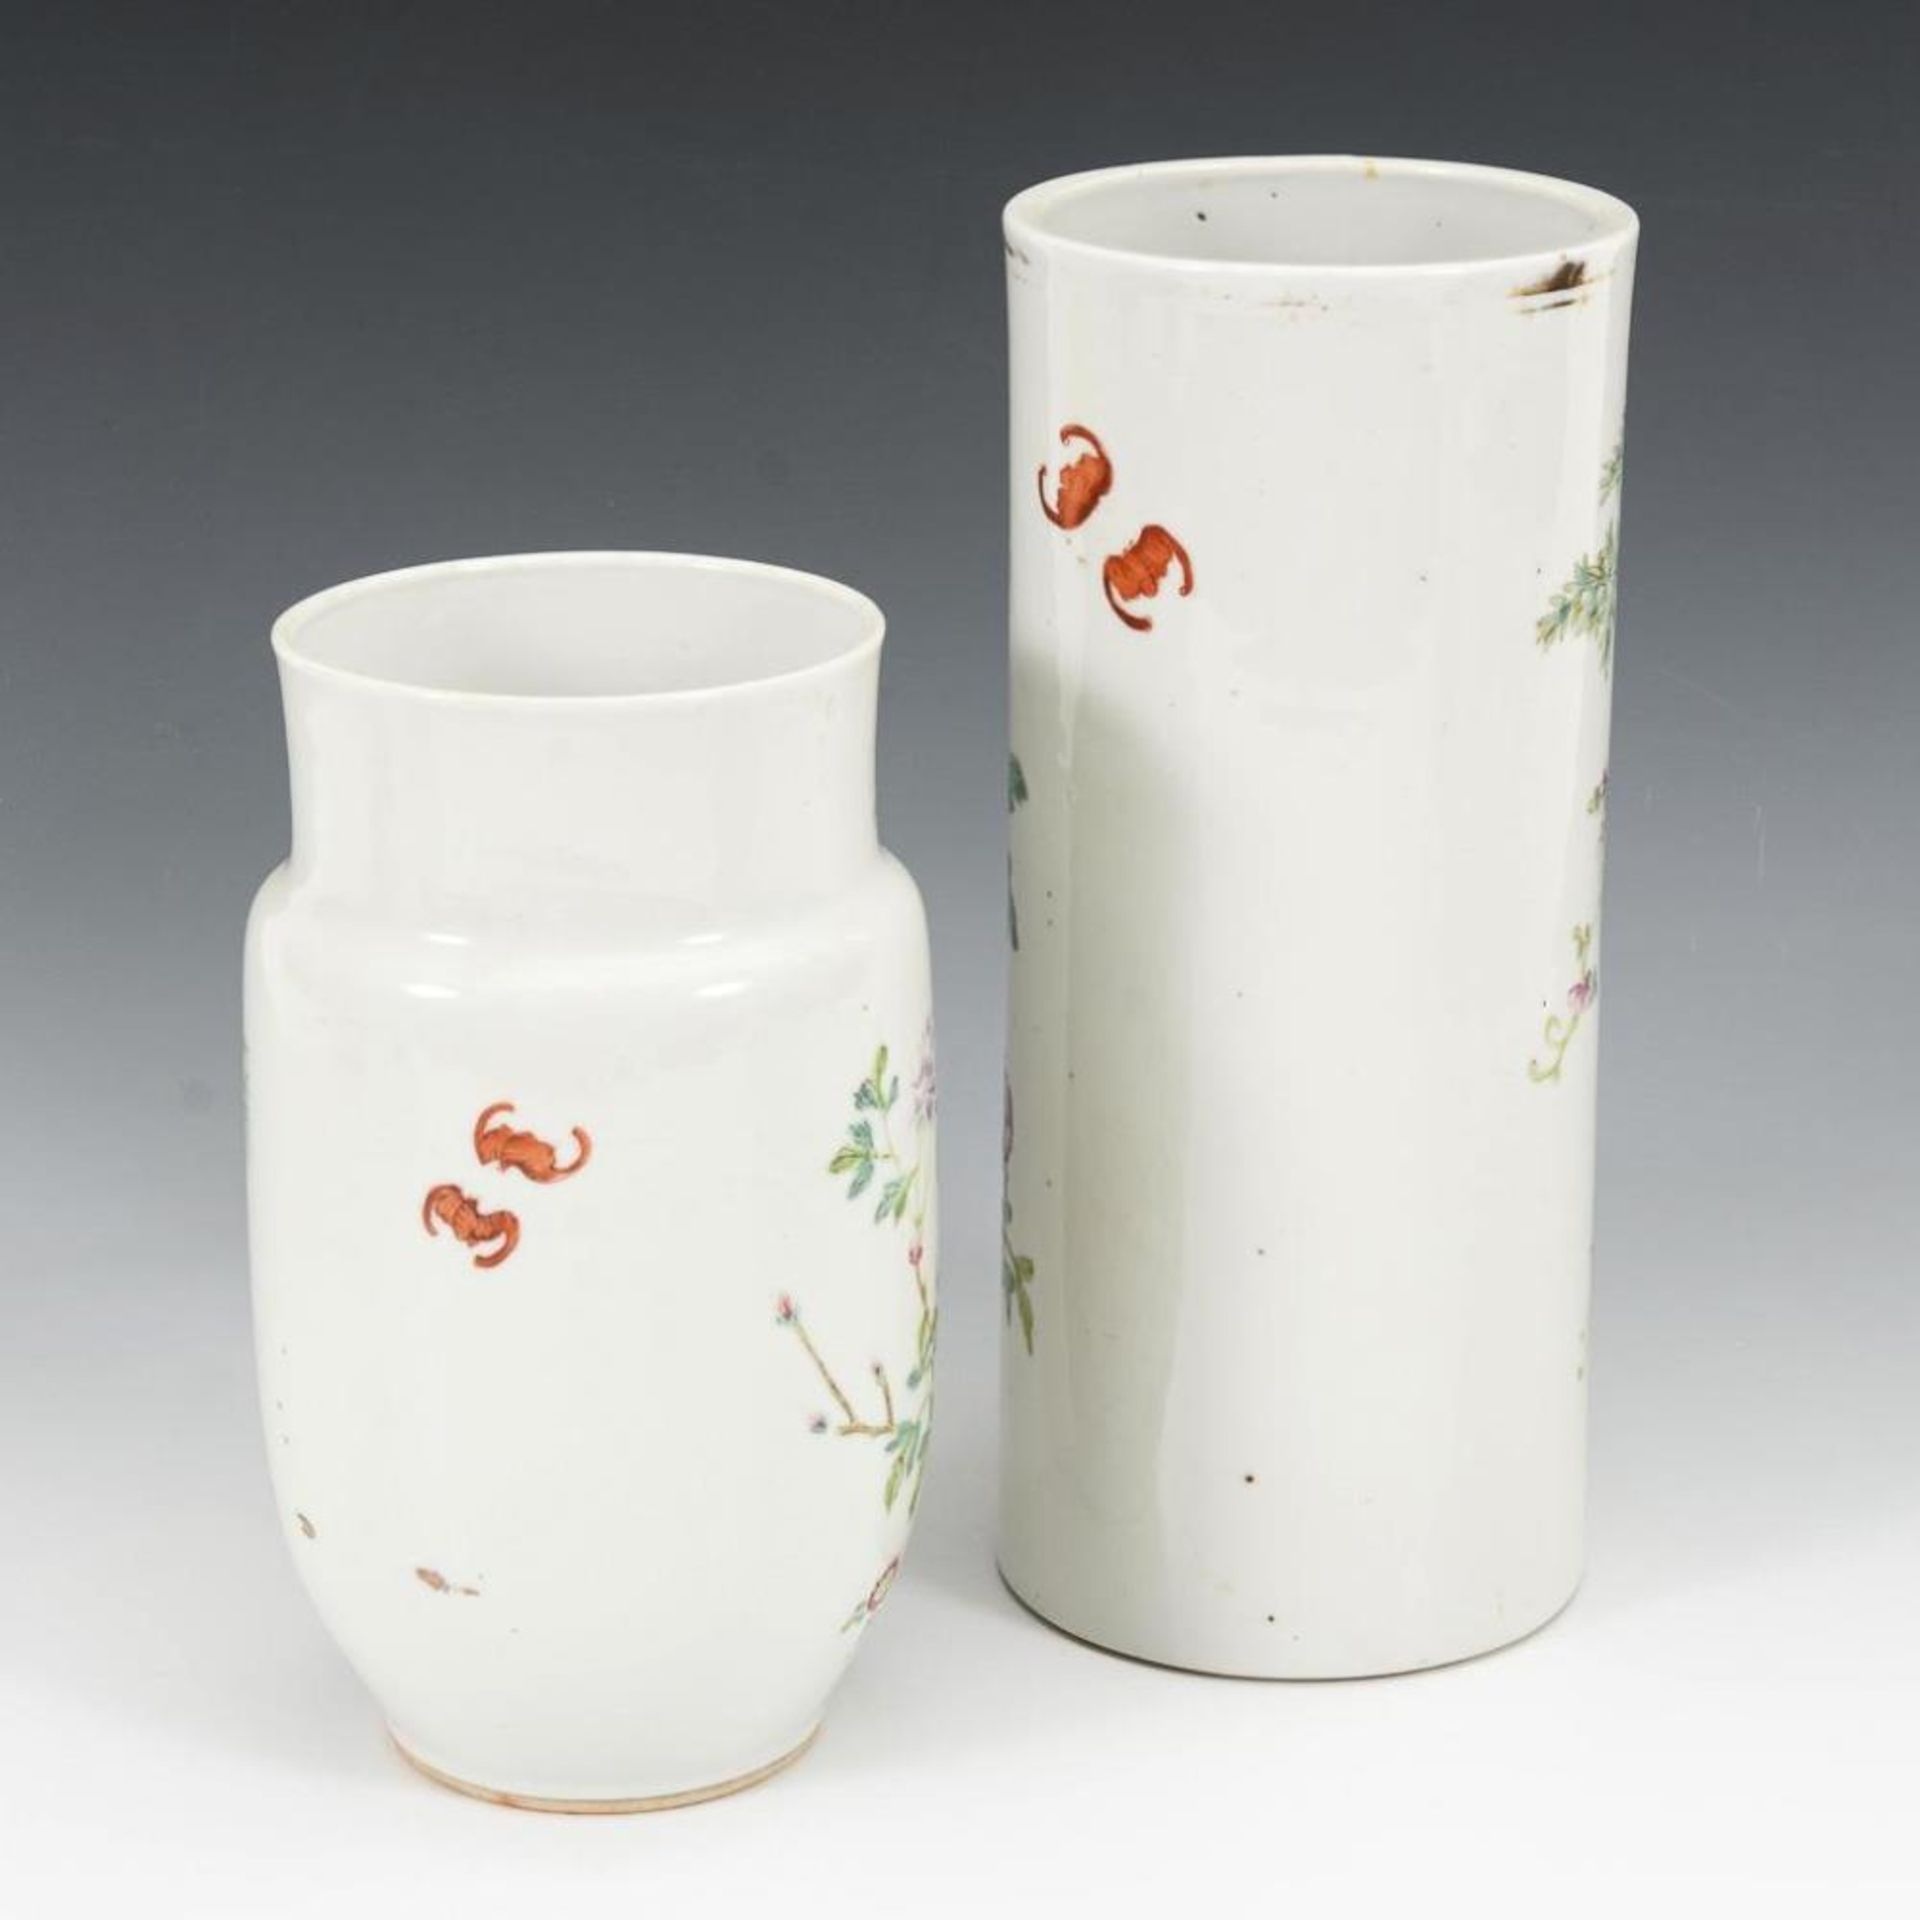 2 Vasen mit Bambus, Blumen und Vögeln. - Image 2 of 3